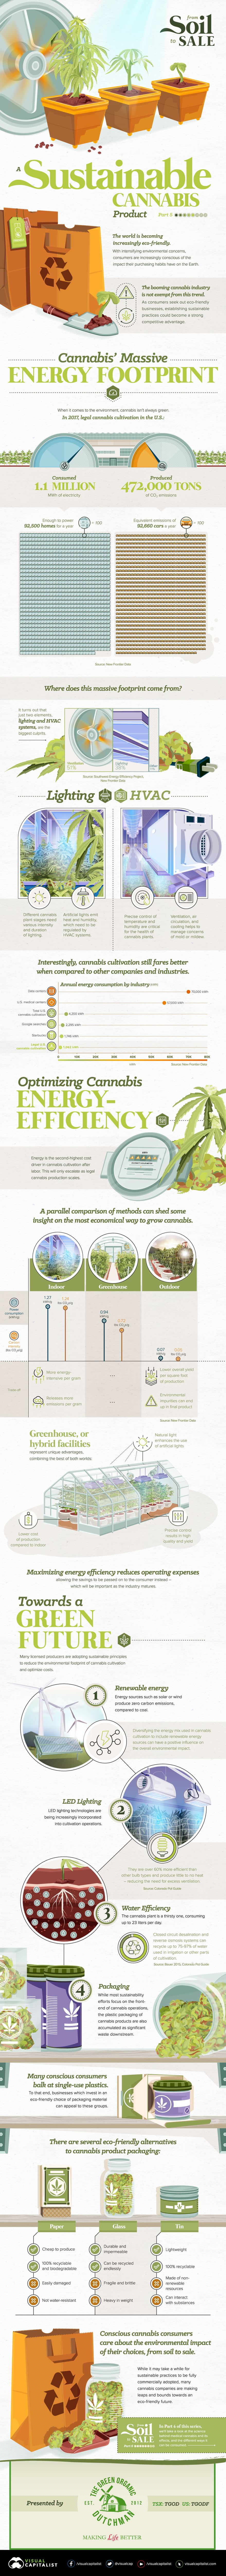 Balancing the Environmental Costs of Cannabis